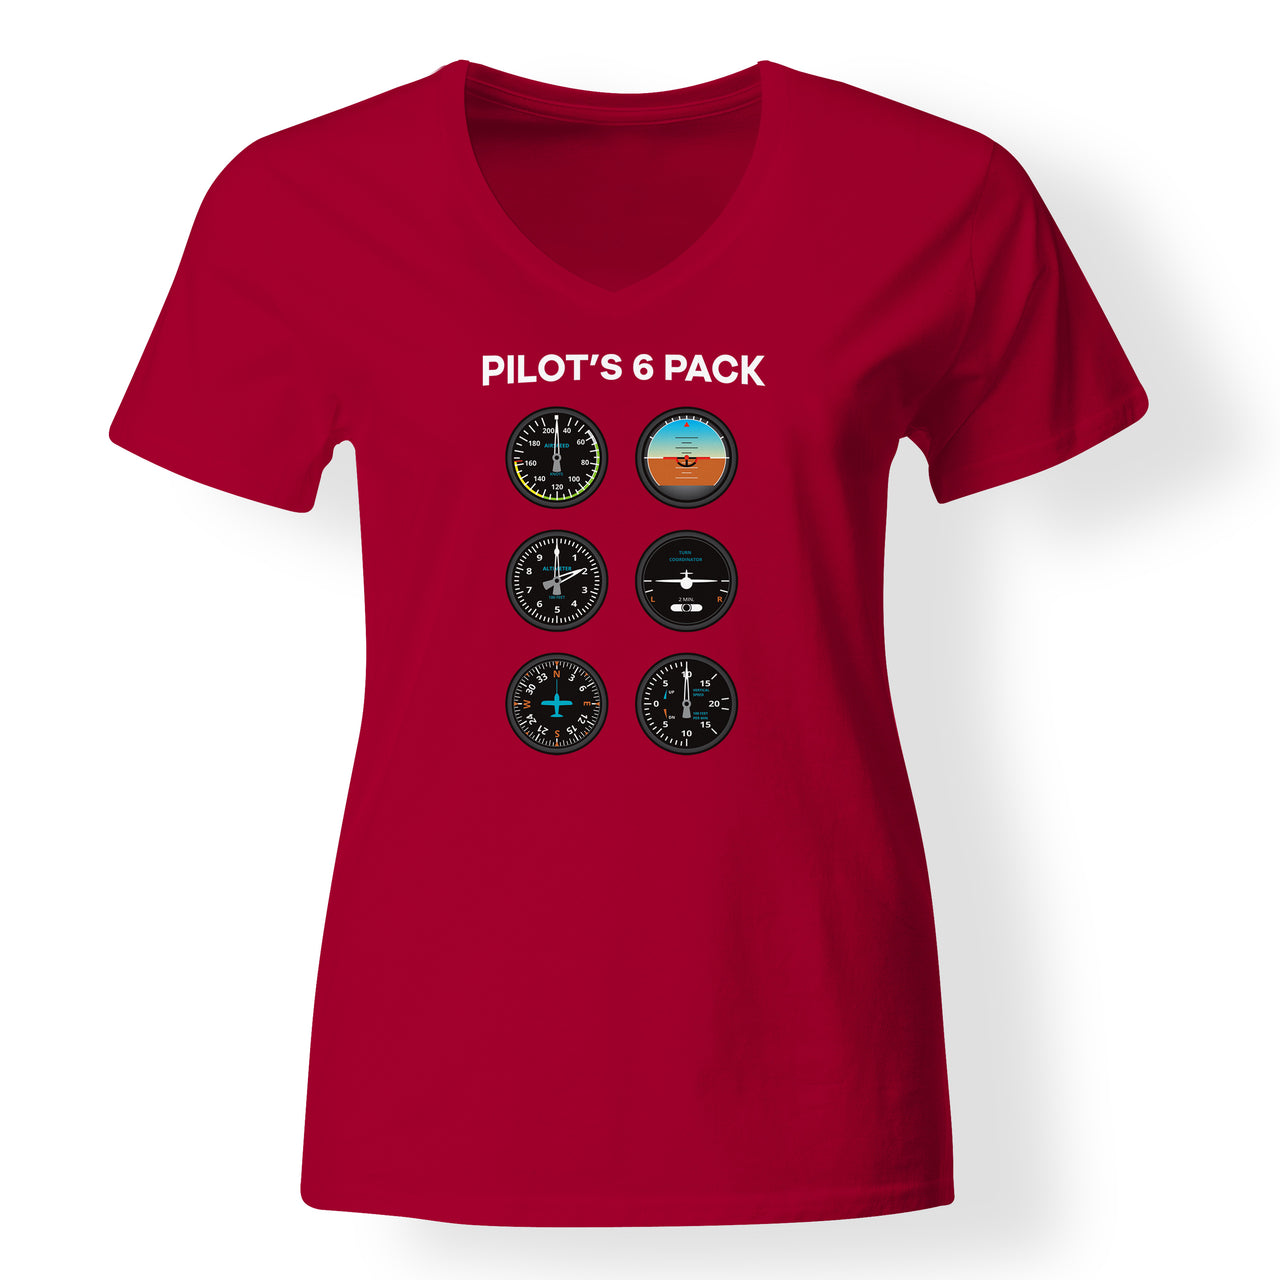 Pilot's 6 Pack Designed V-Neck T-Shirts